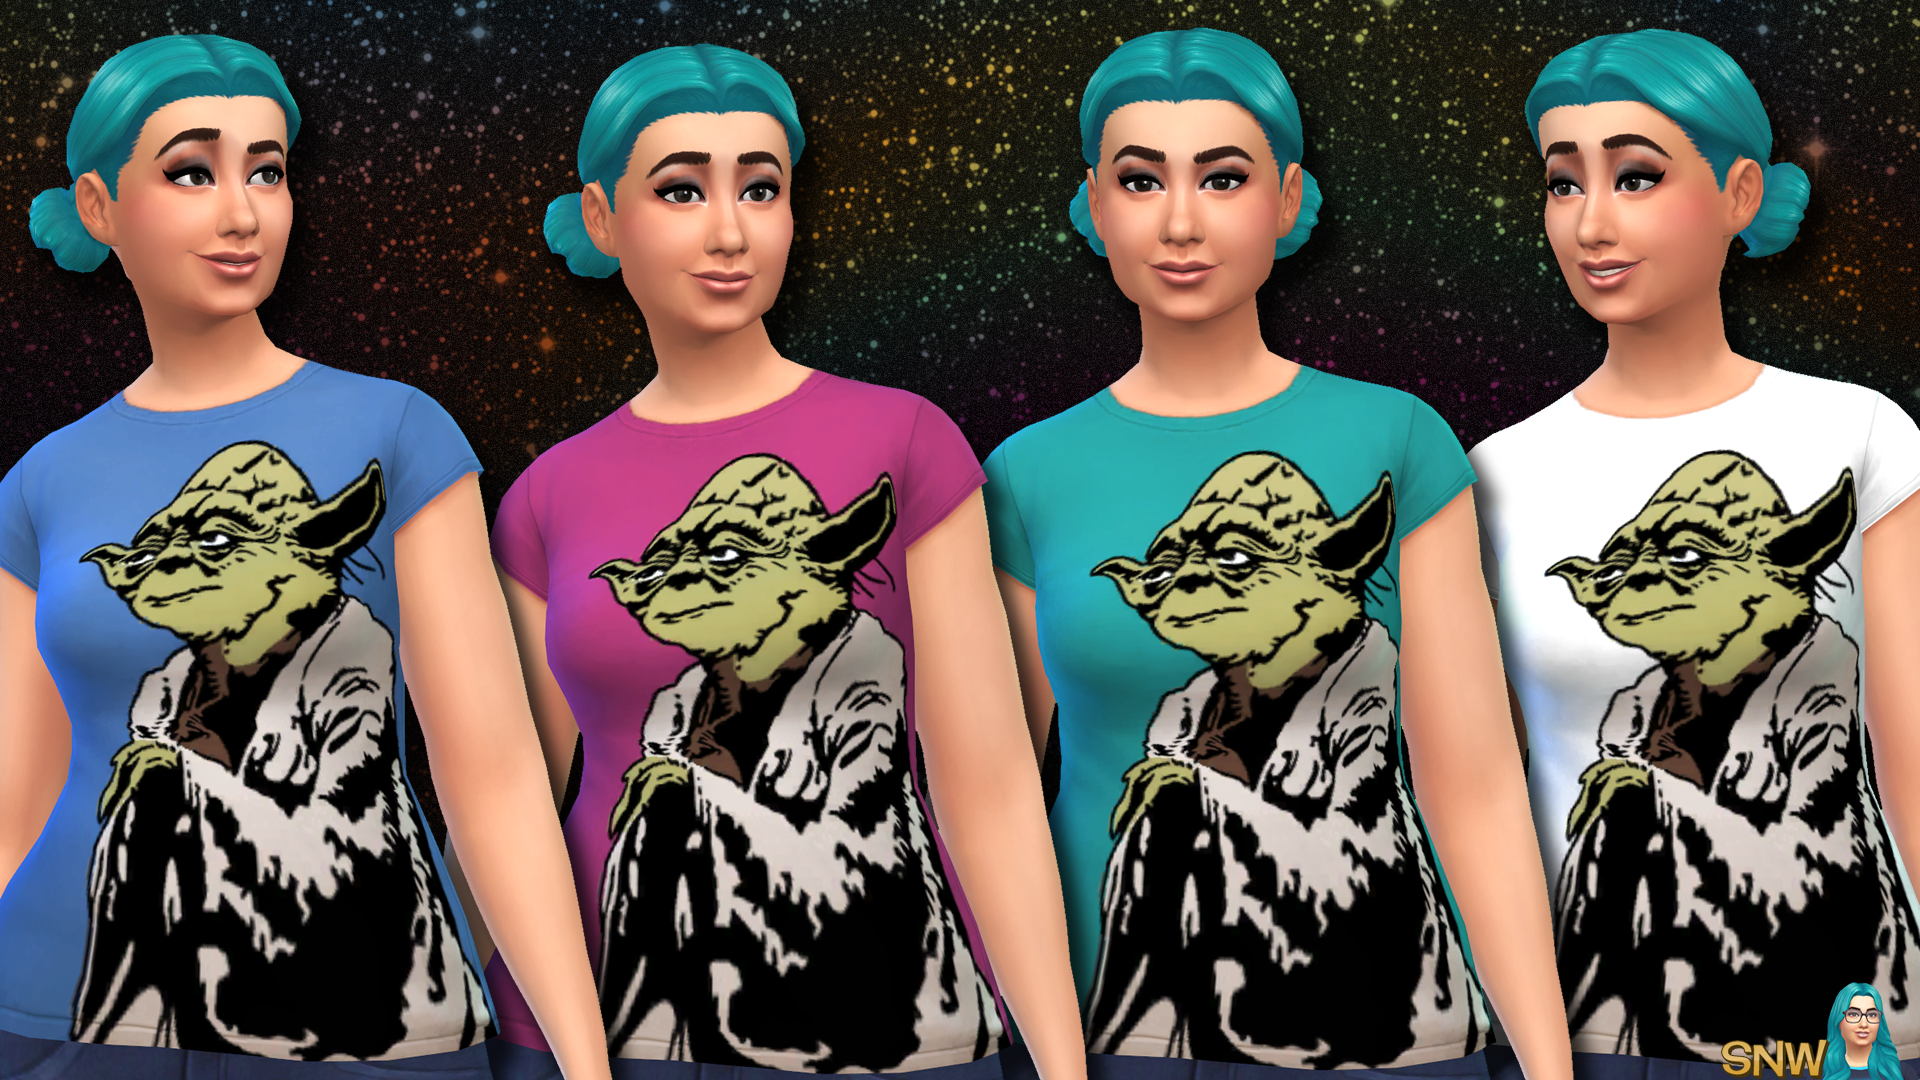 Star Wars Yoda Shirts for Women